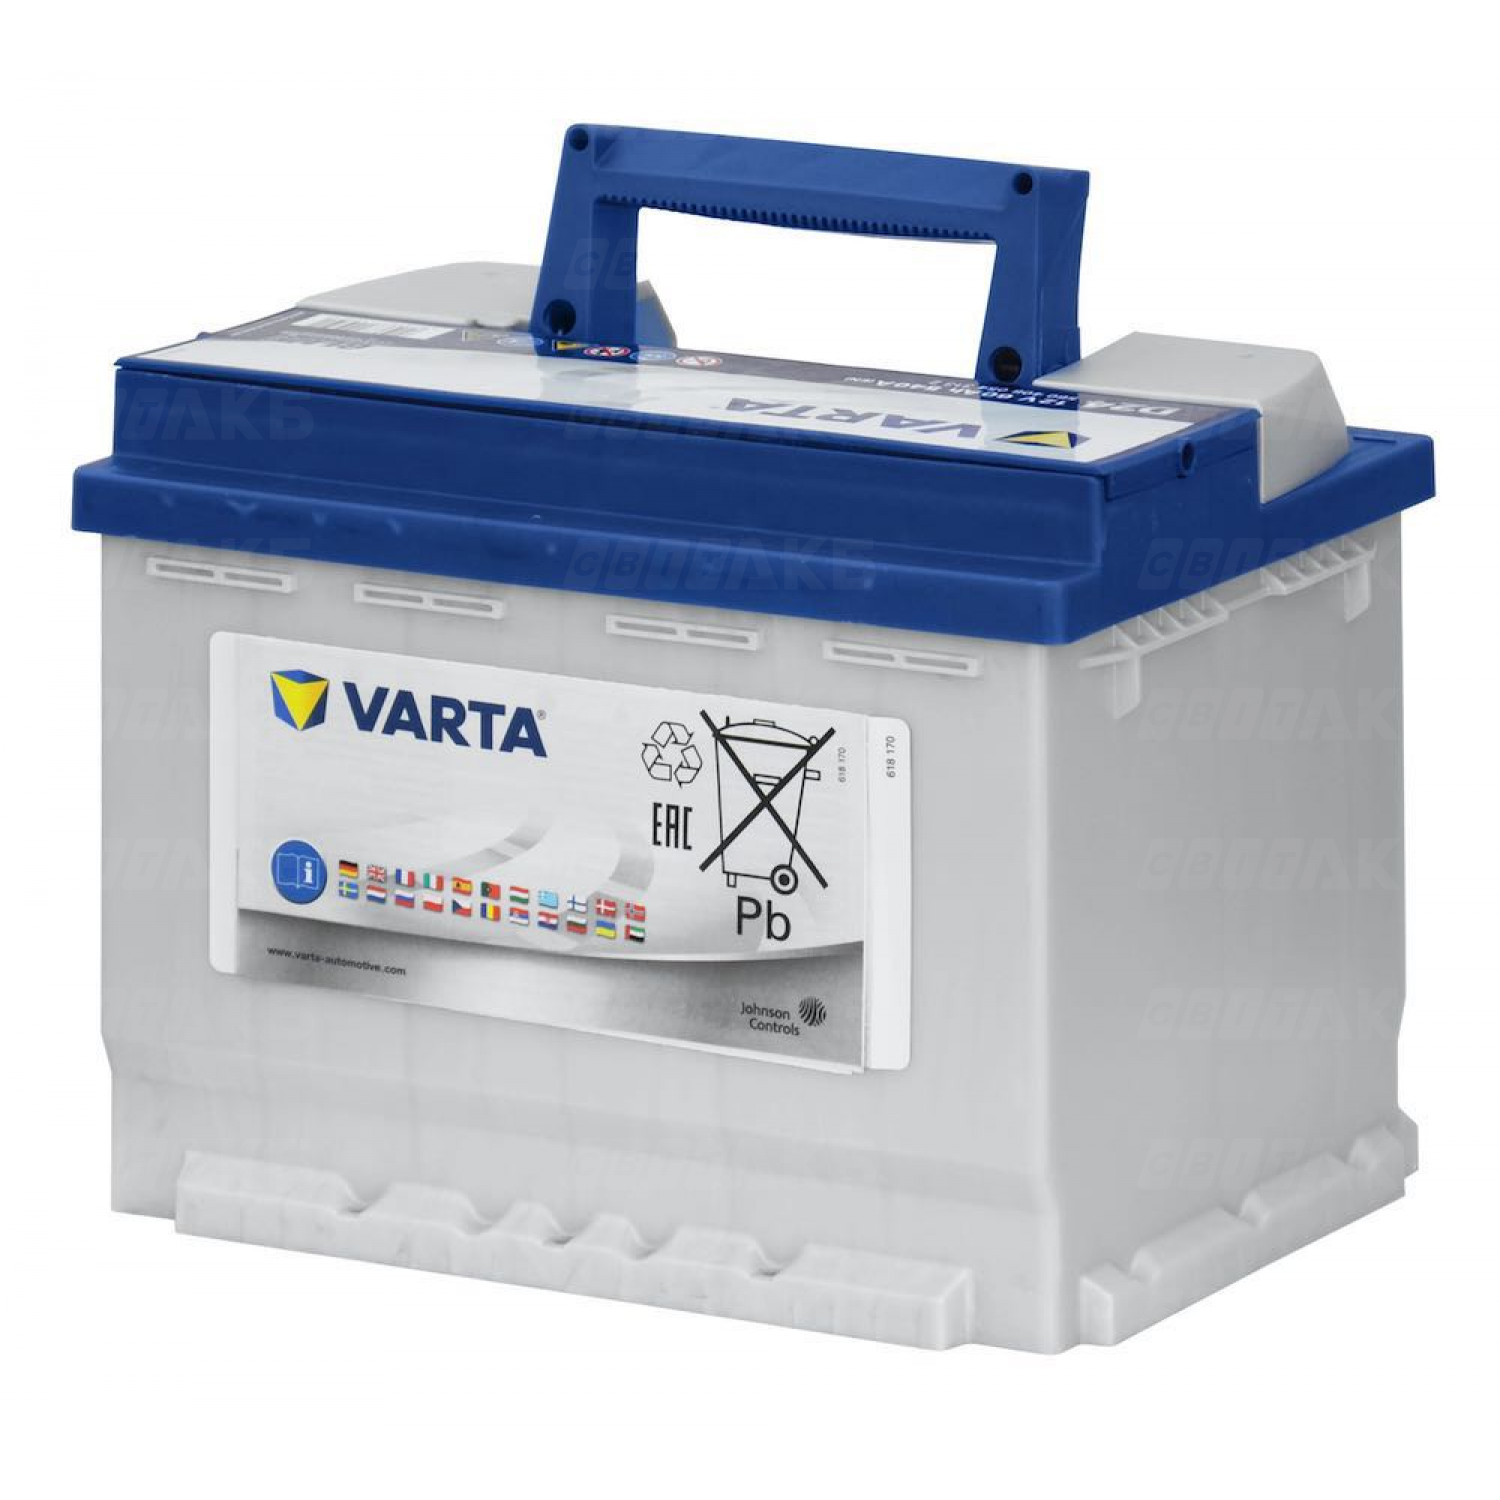 VARTA D24 Batterie